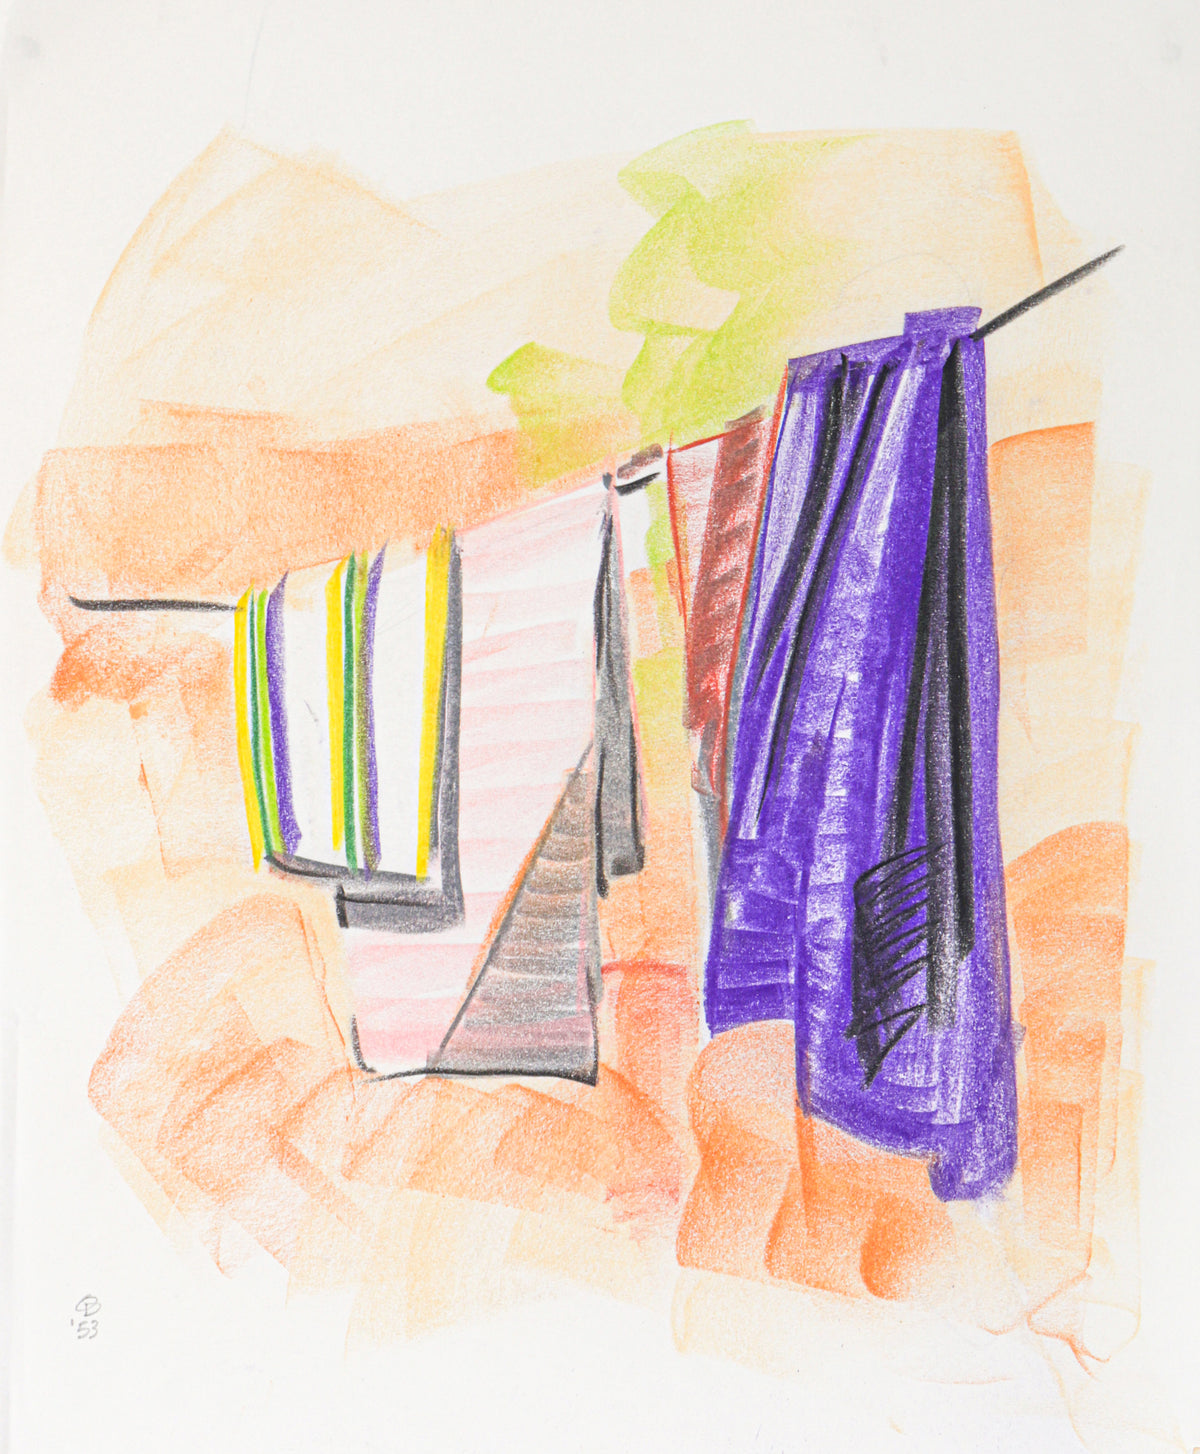 Towels Hanging to Dry&lt;br&gt;1953 Crayon&lt;br&gt;&lt;br&gt;#C2763